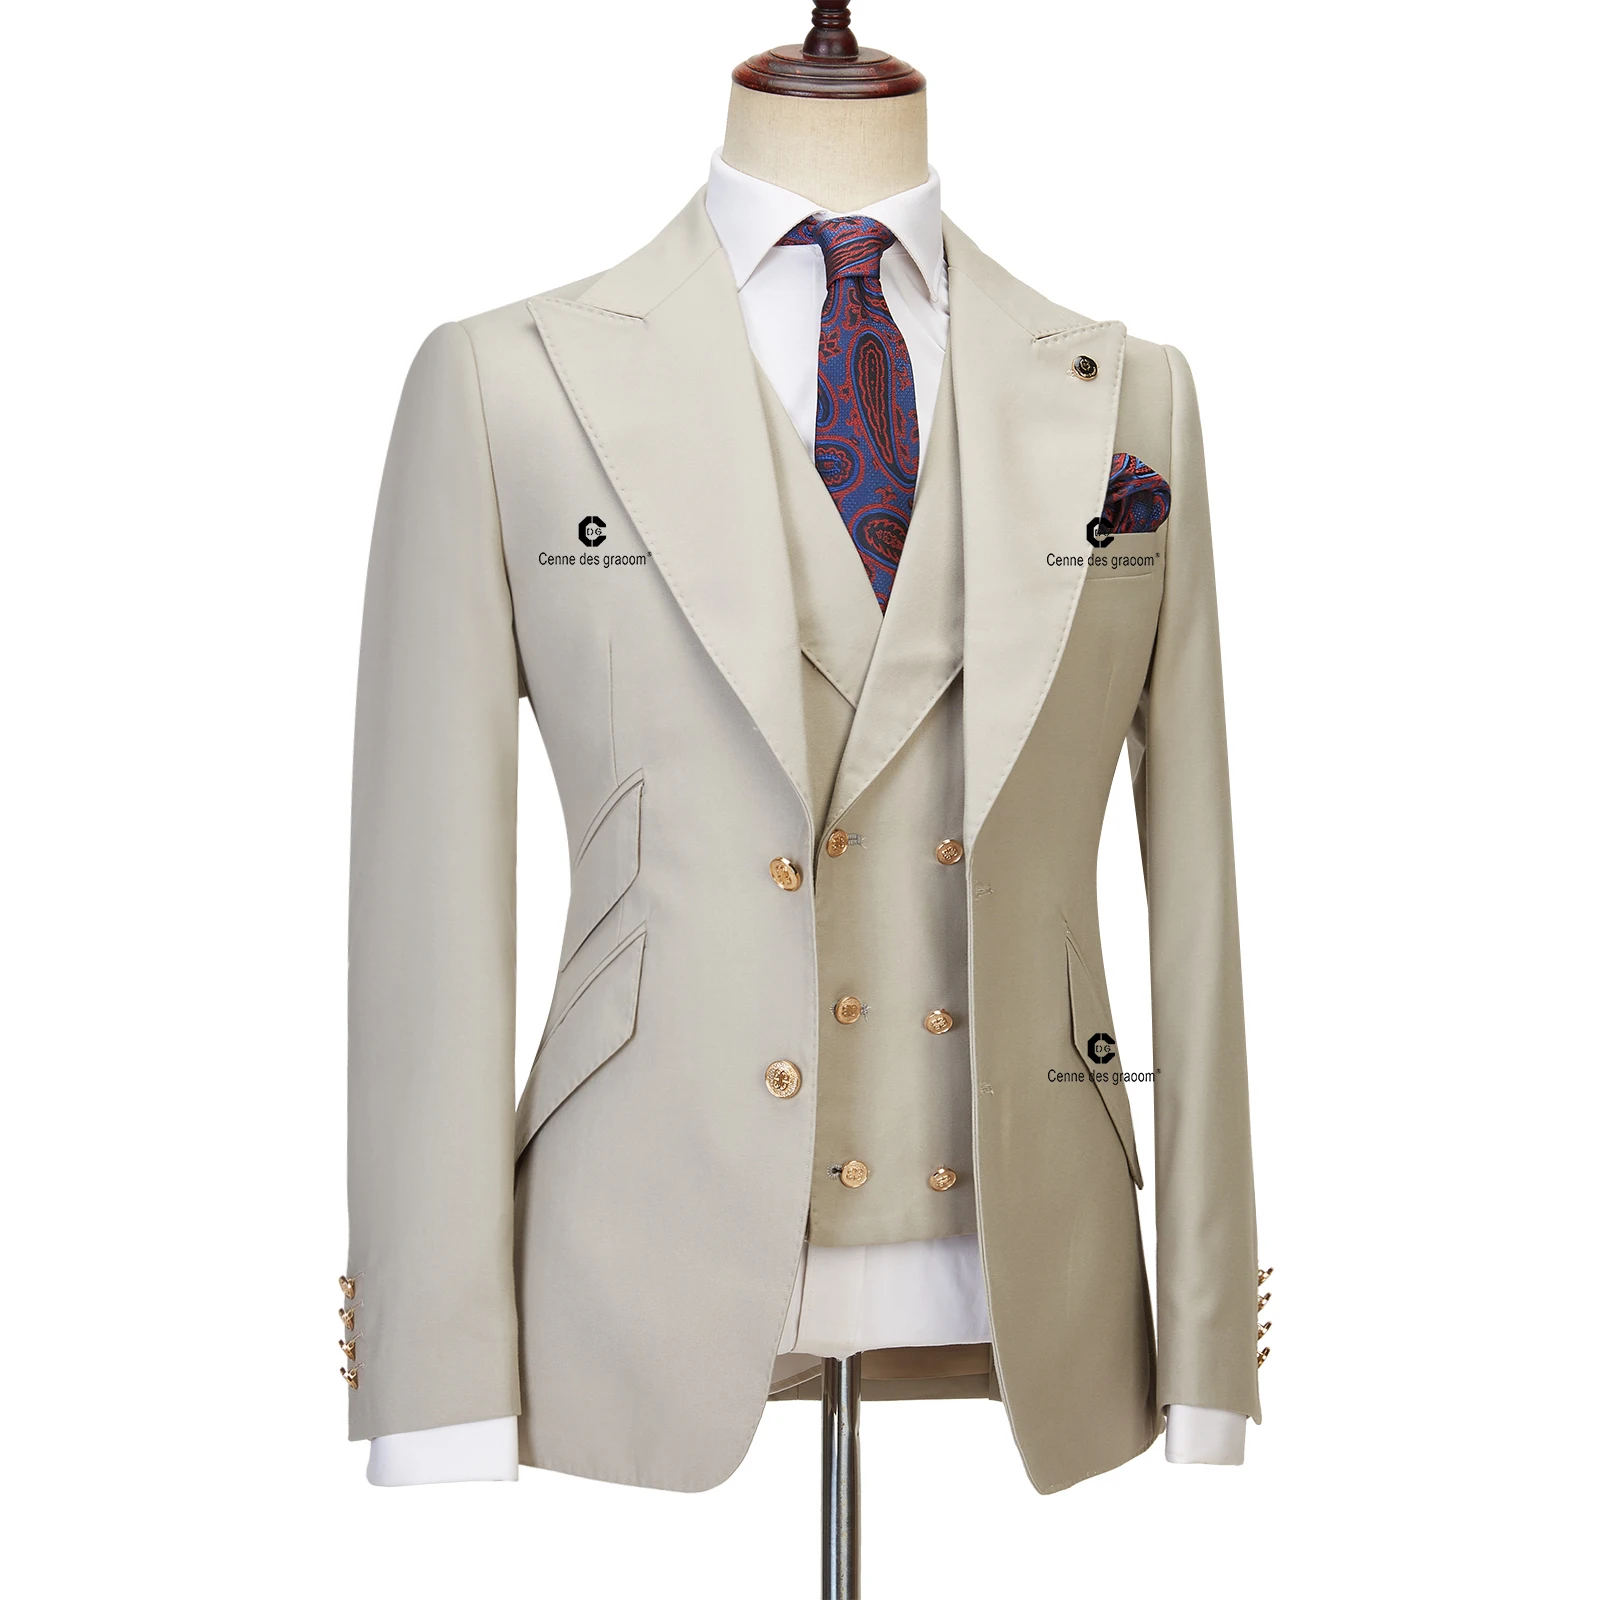 Mens Suits 3 Piece Slim Fit Wedding Business Dinner Suit for Men Cenne des graoom Lapel Blazer Waistcoat Trousers